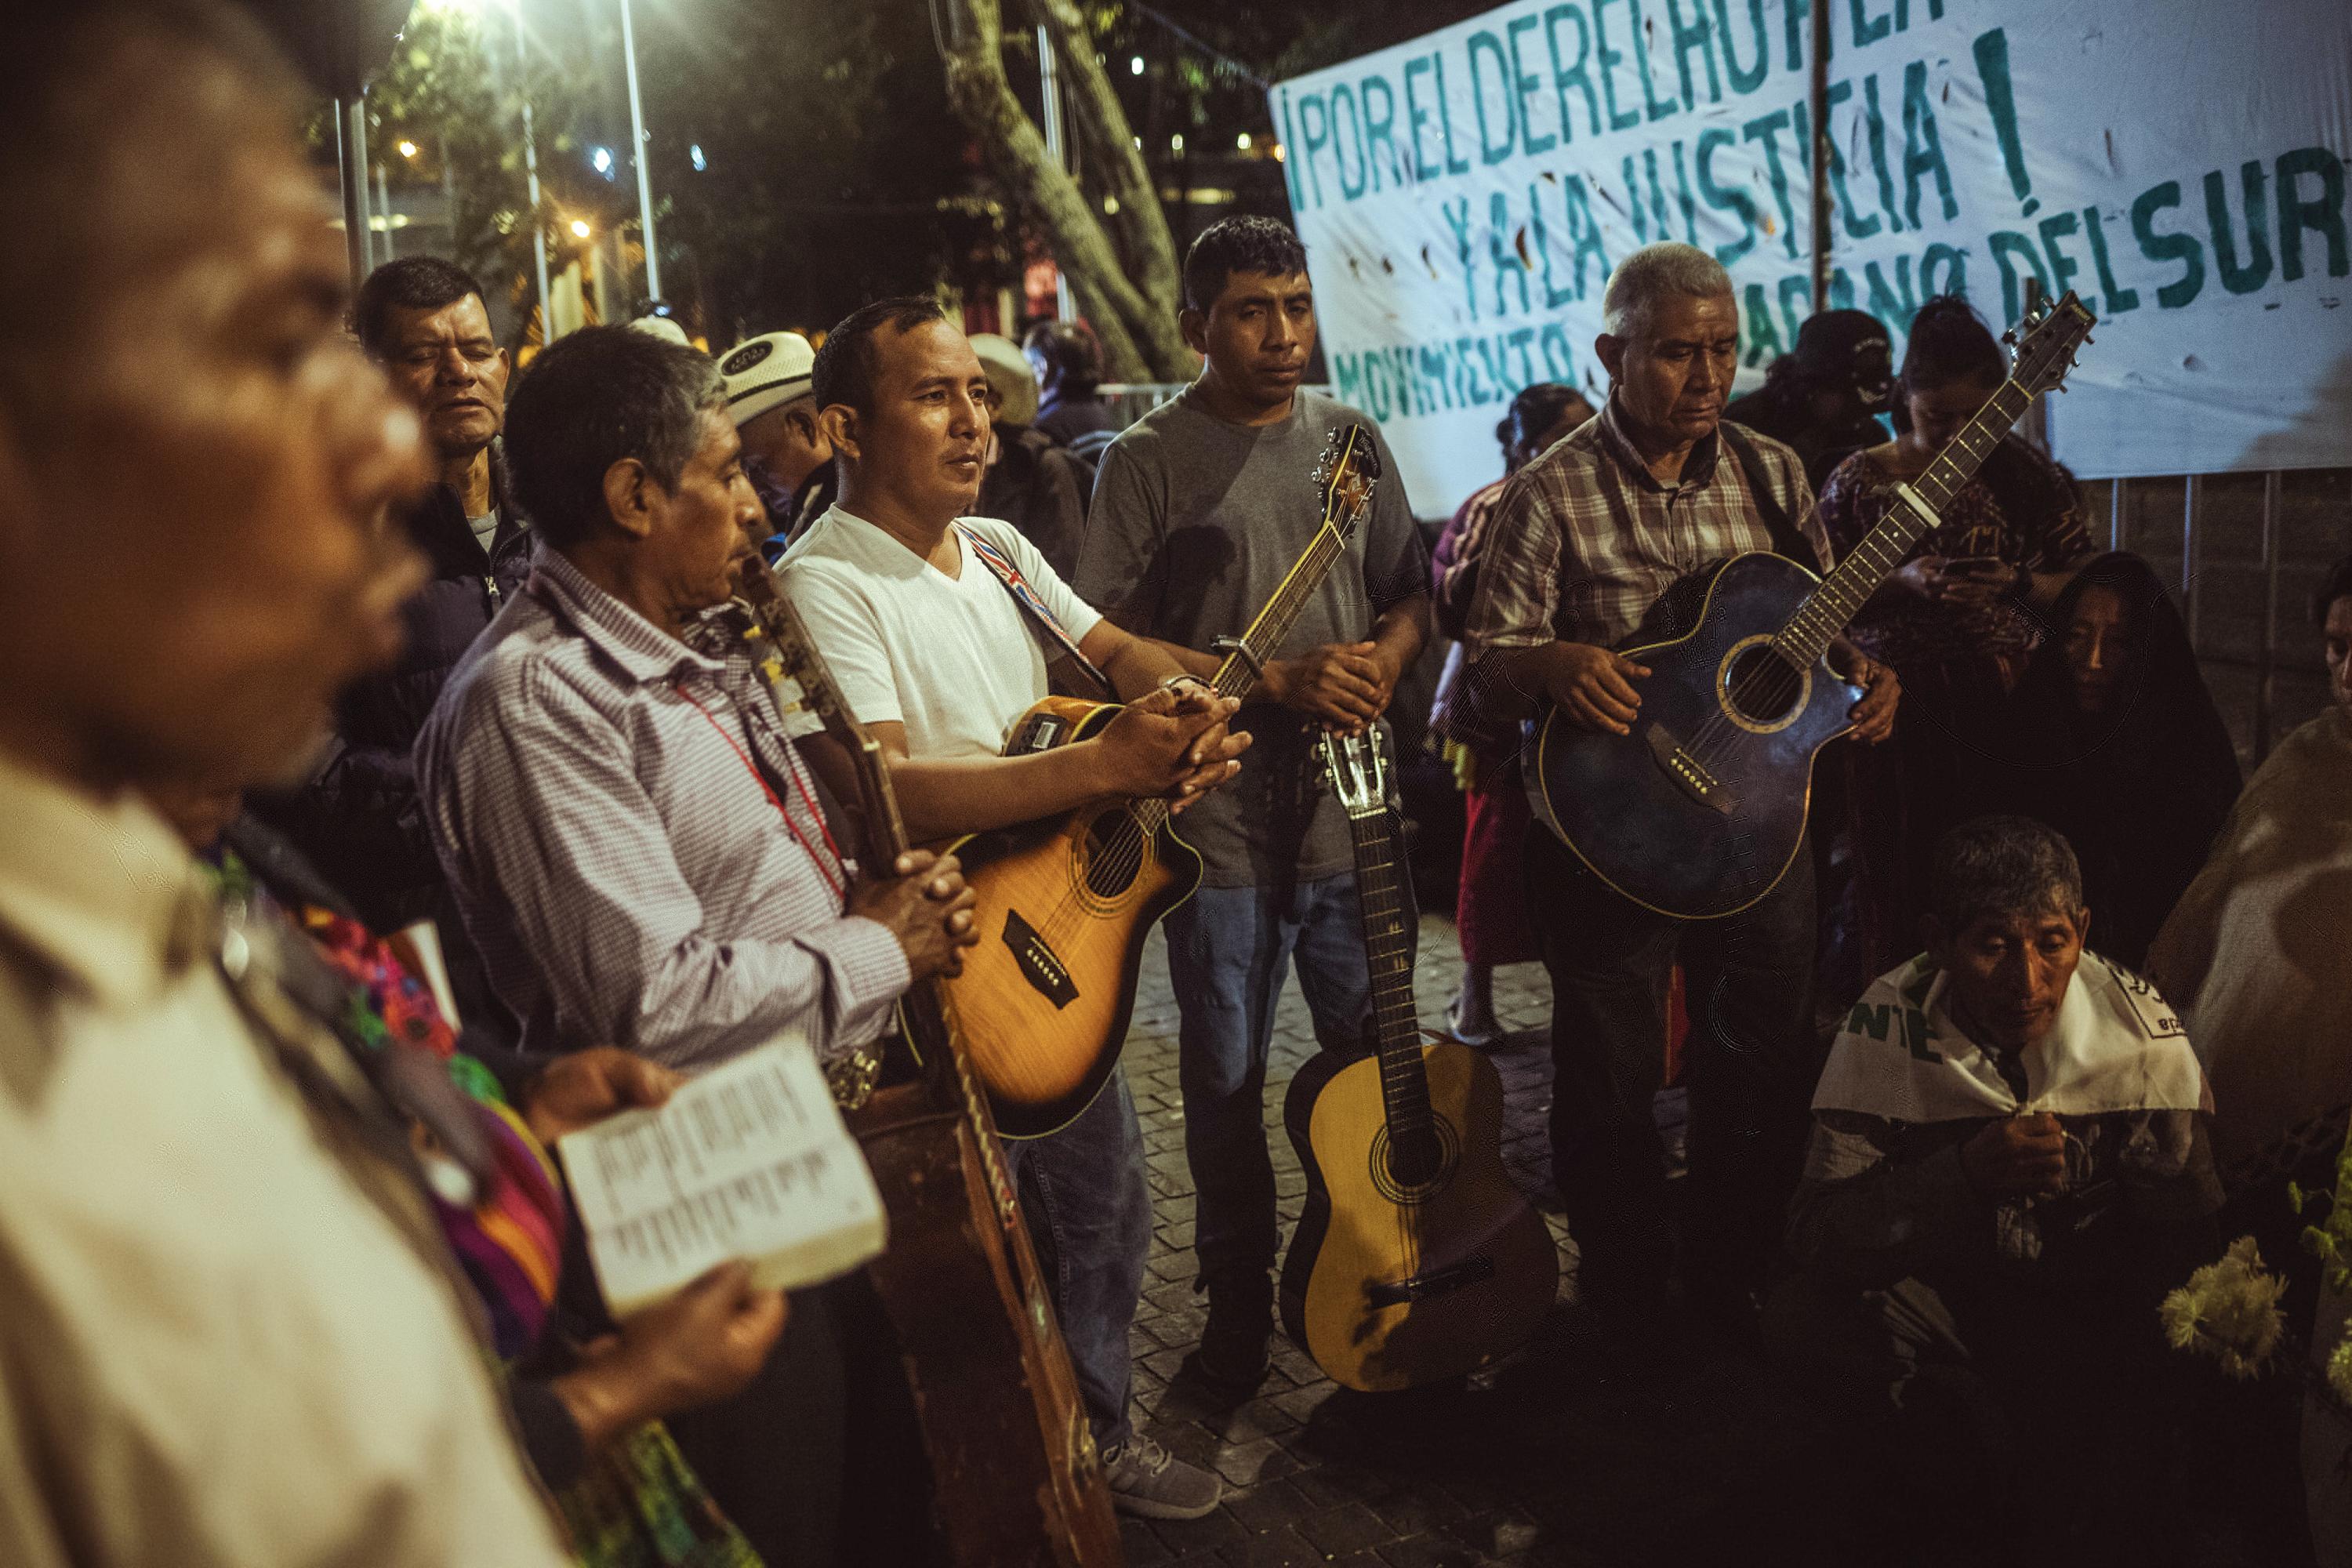 La noche del sábado 13 de enero se concentraron en la Plaza de la Constitución miembros del Movimiento Ciudadano del Sur de Guatemala para celebrar una vigilia religiosa y pedir, entre rezos y cánticos, por la vida del presidente Bernardo Arévalo y por que la transición del mando se lograra de forma pacífica.